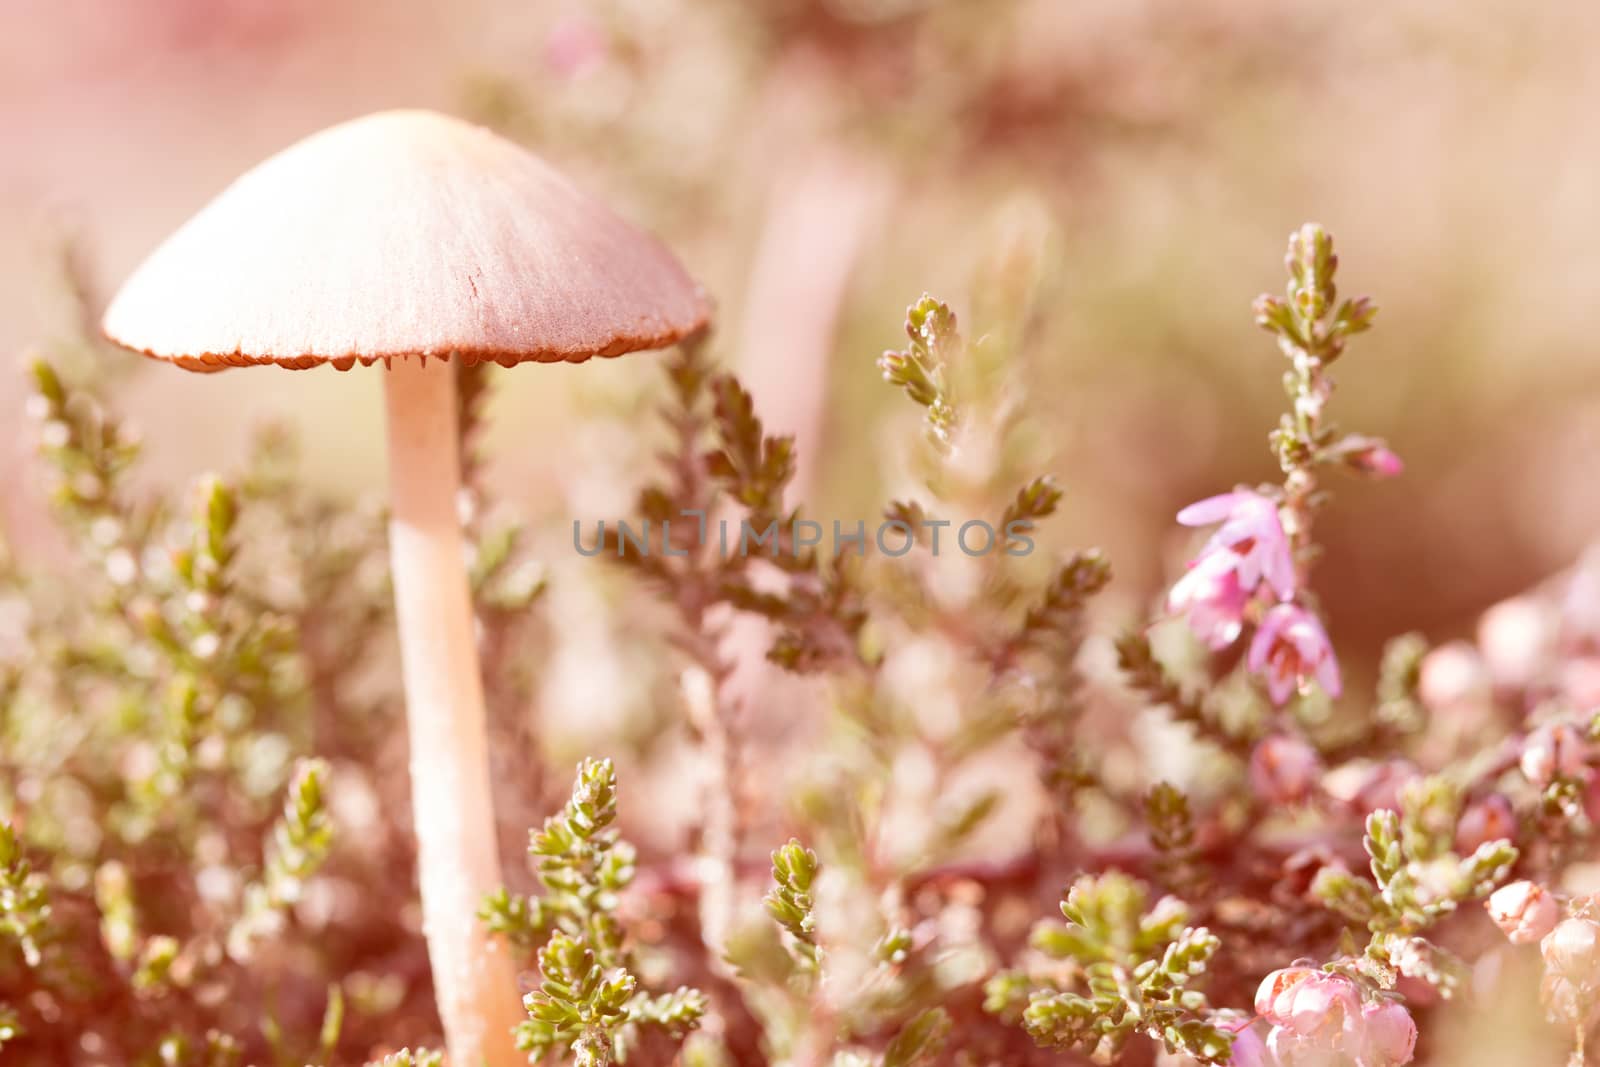 mushroom, closeup, macro